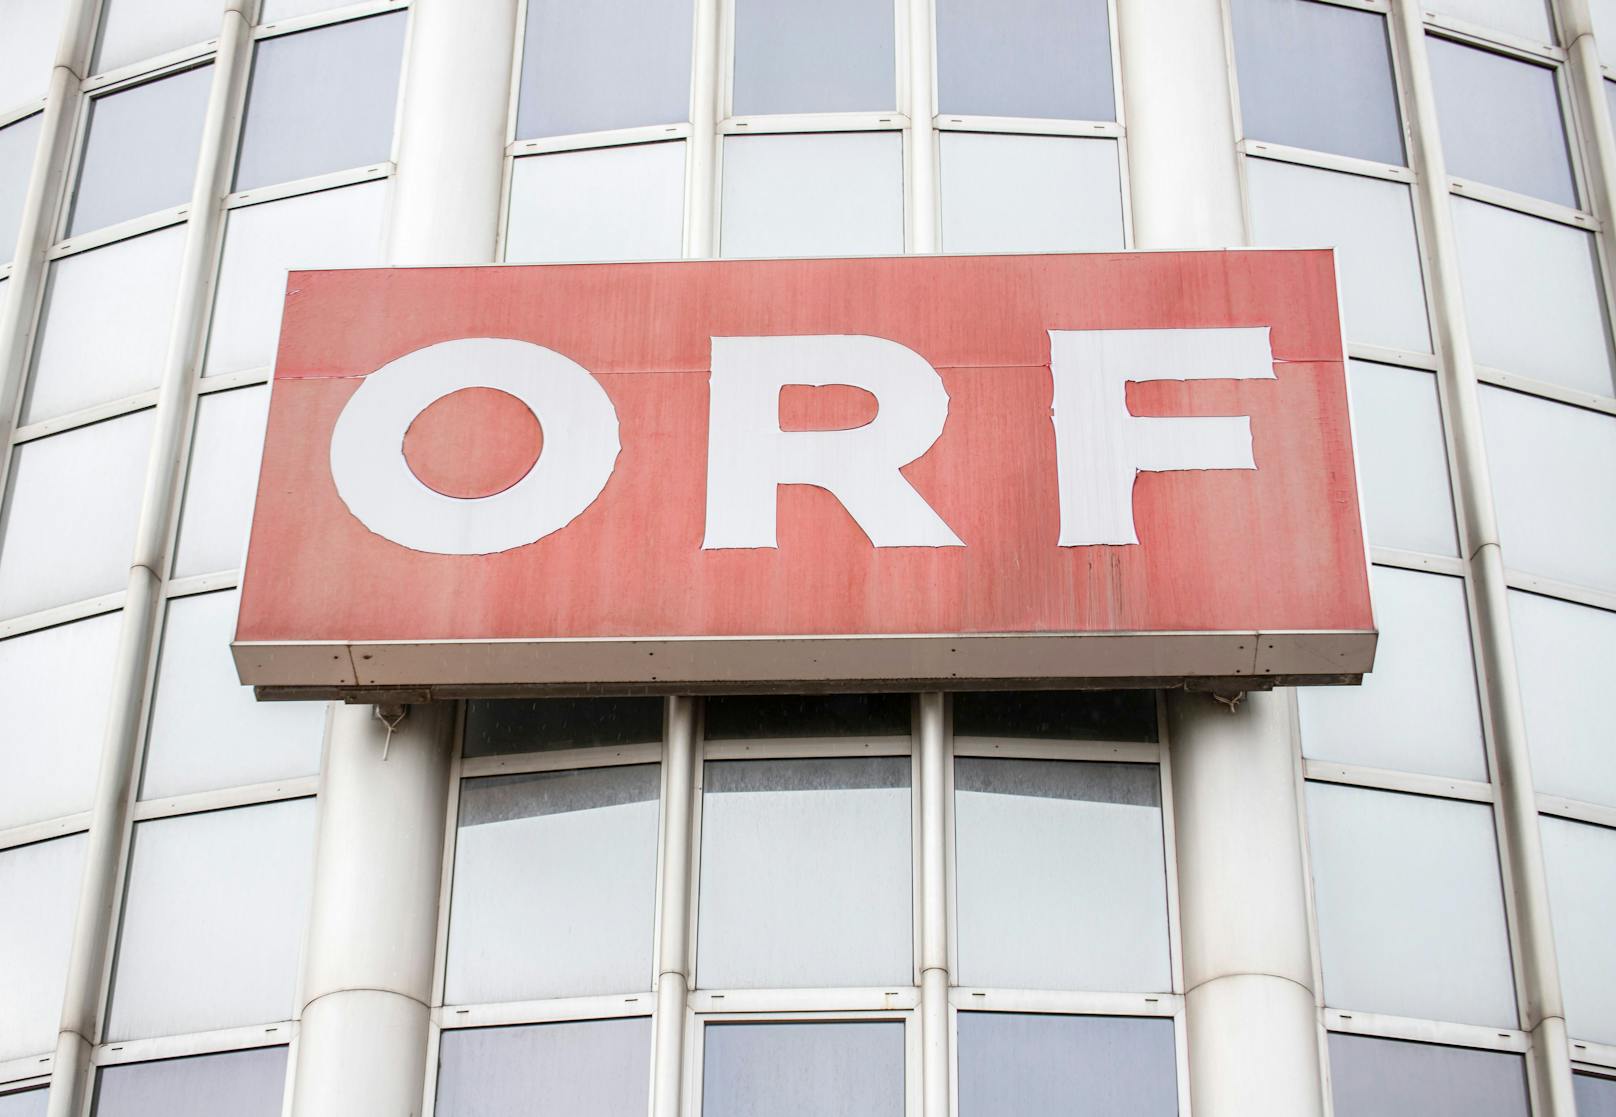 "Zwangsgebühr" – so kannst du gegen ORF-Abgabe klagen